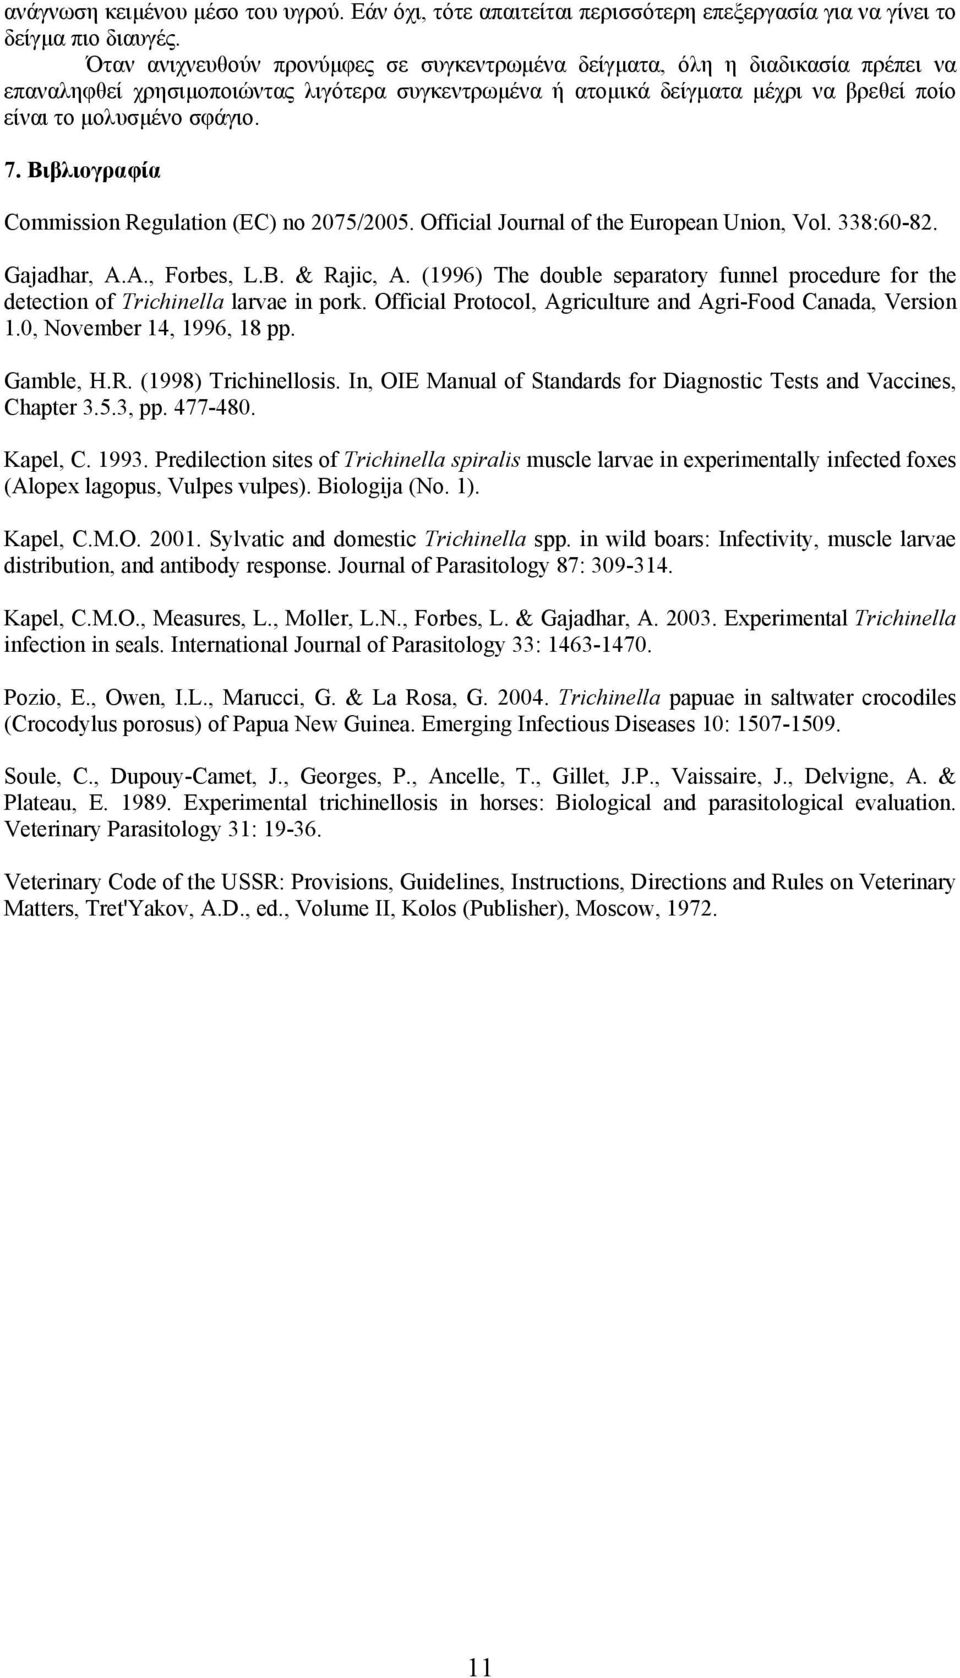 7. Βιβλιογραφία Commission Regulation (EC) no 2075/2005. Official Journal of the European Union, Vol. 338:60-82. Gajadhar, A.A., Forbes, L.B. & Rajic, A.